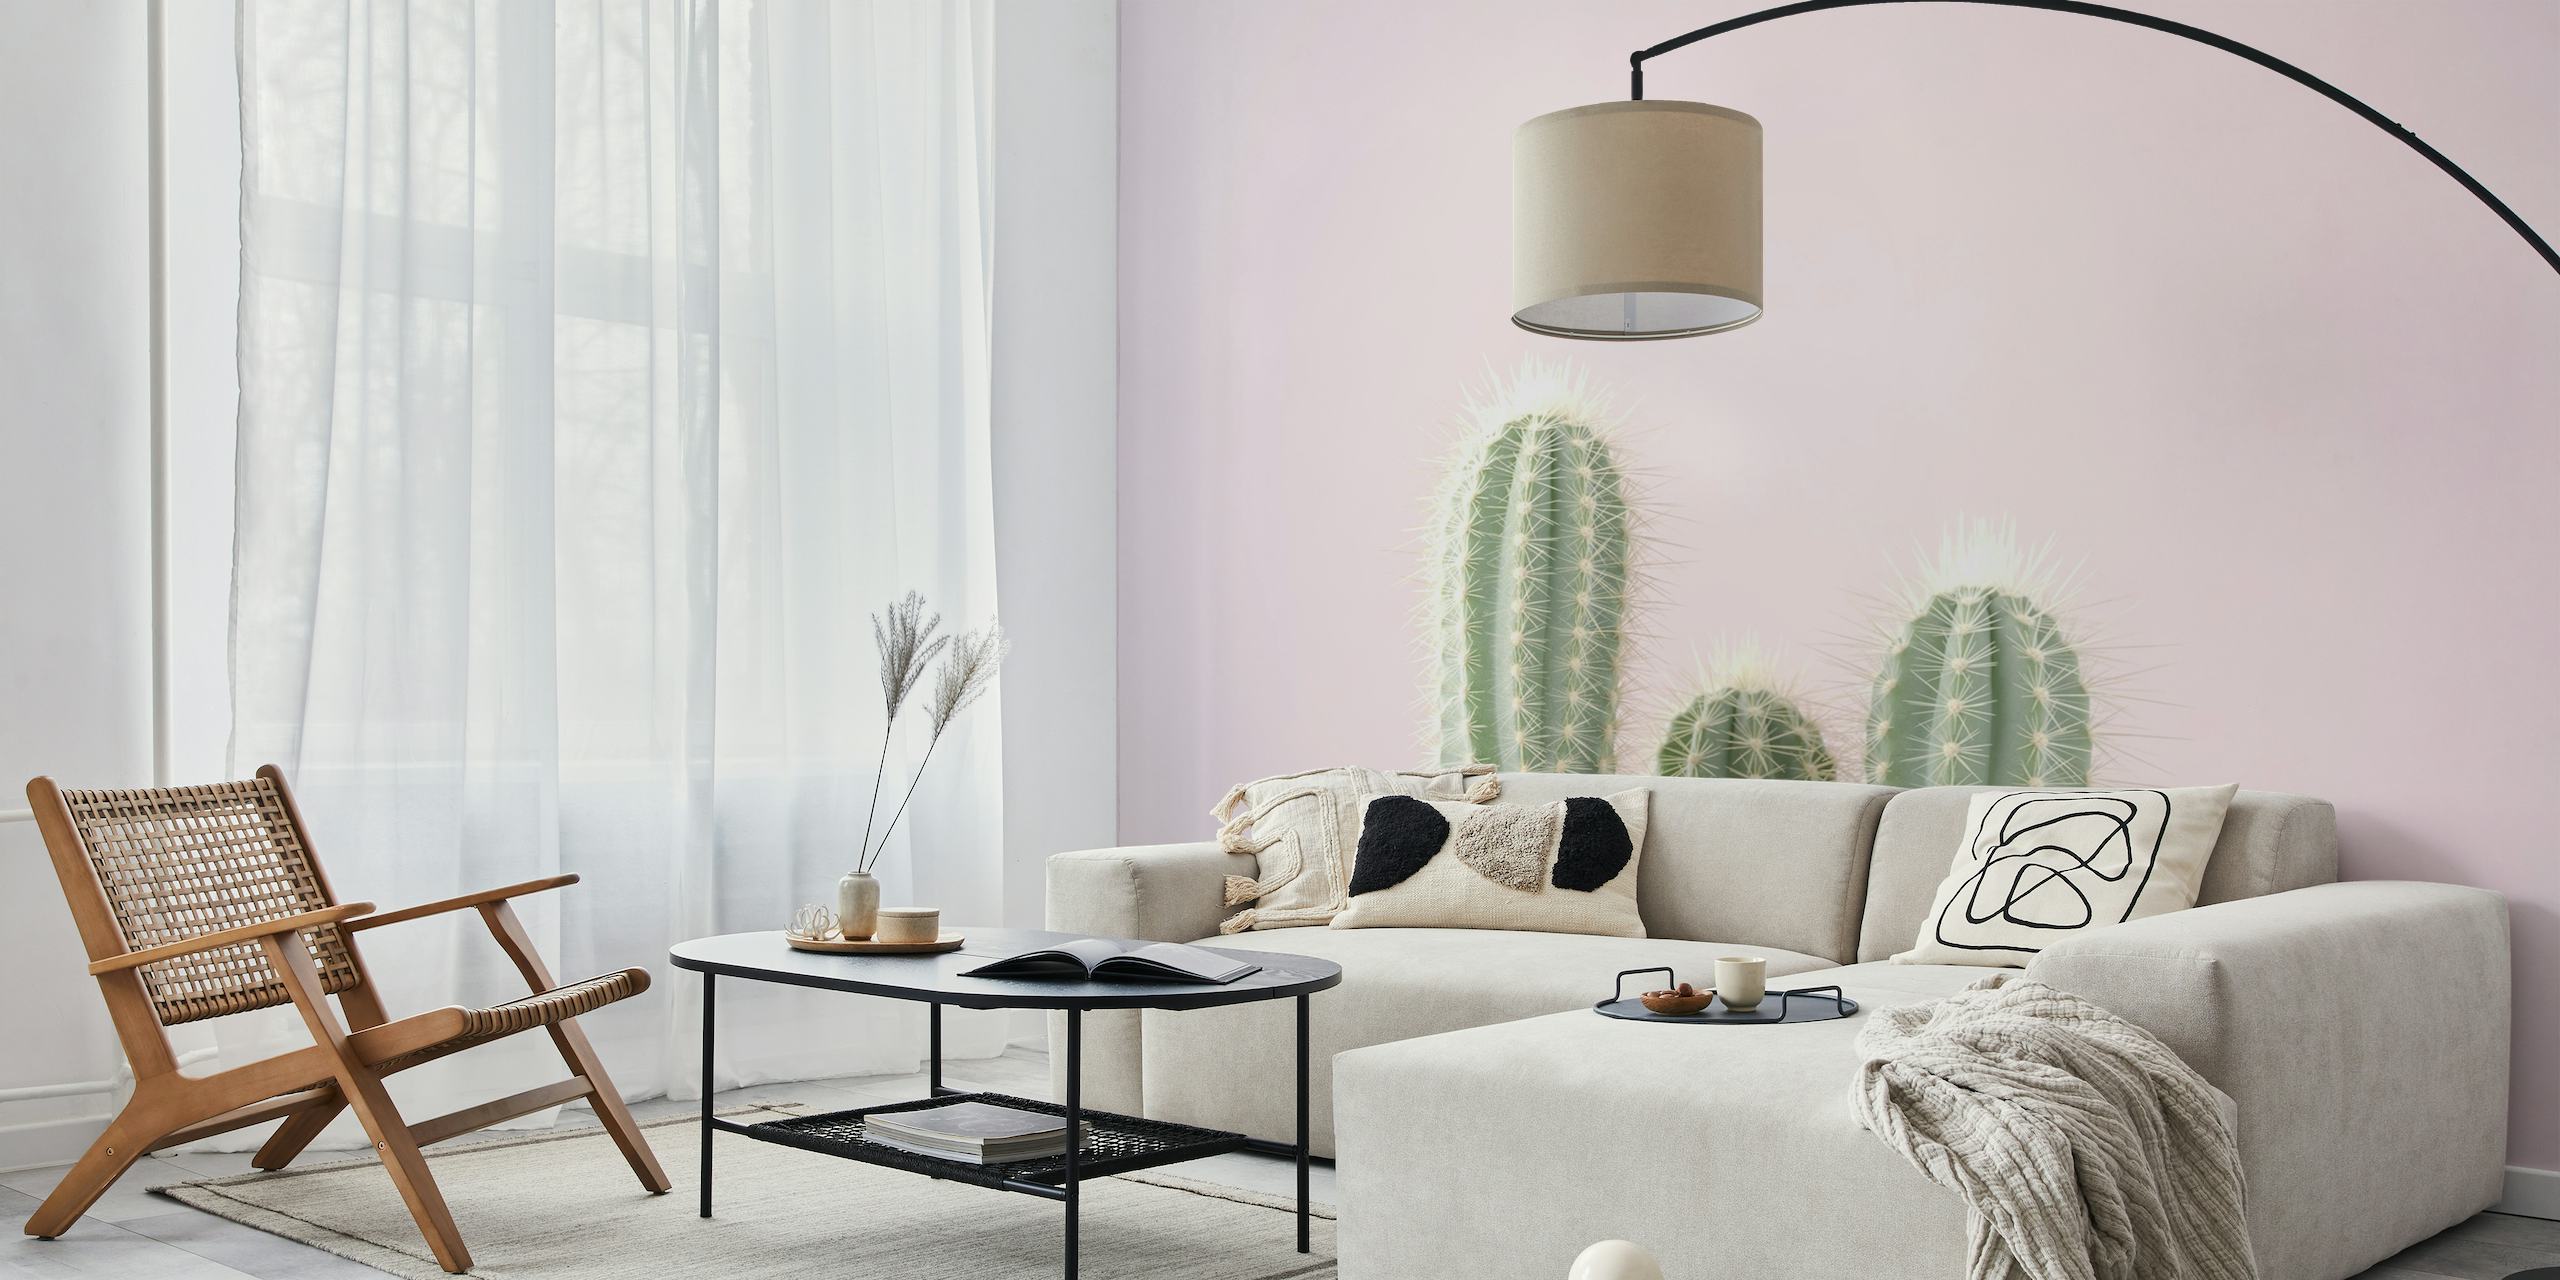 Kaktus-Wandbild in Pastellfarben, das Widerstandsfähigkeit und Schönheit vermittelt